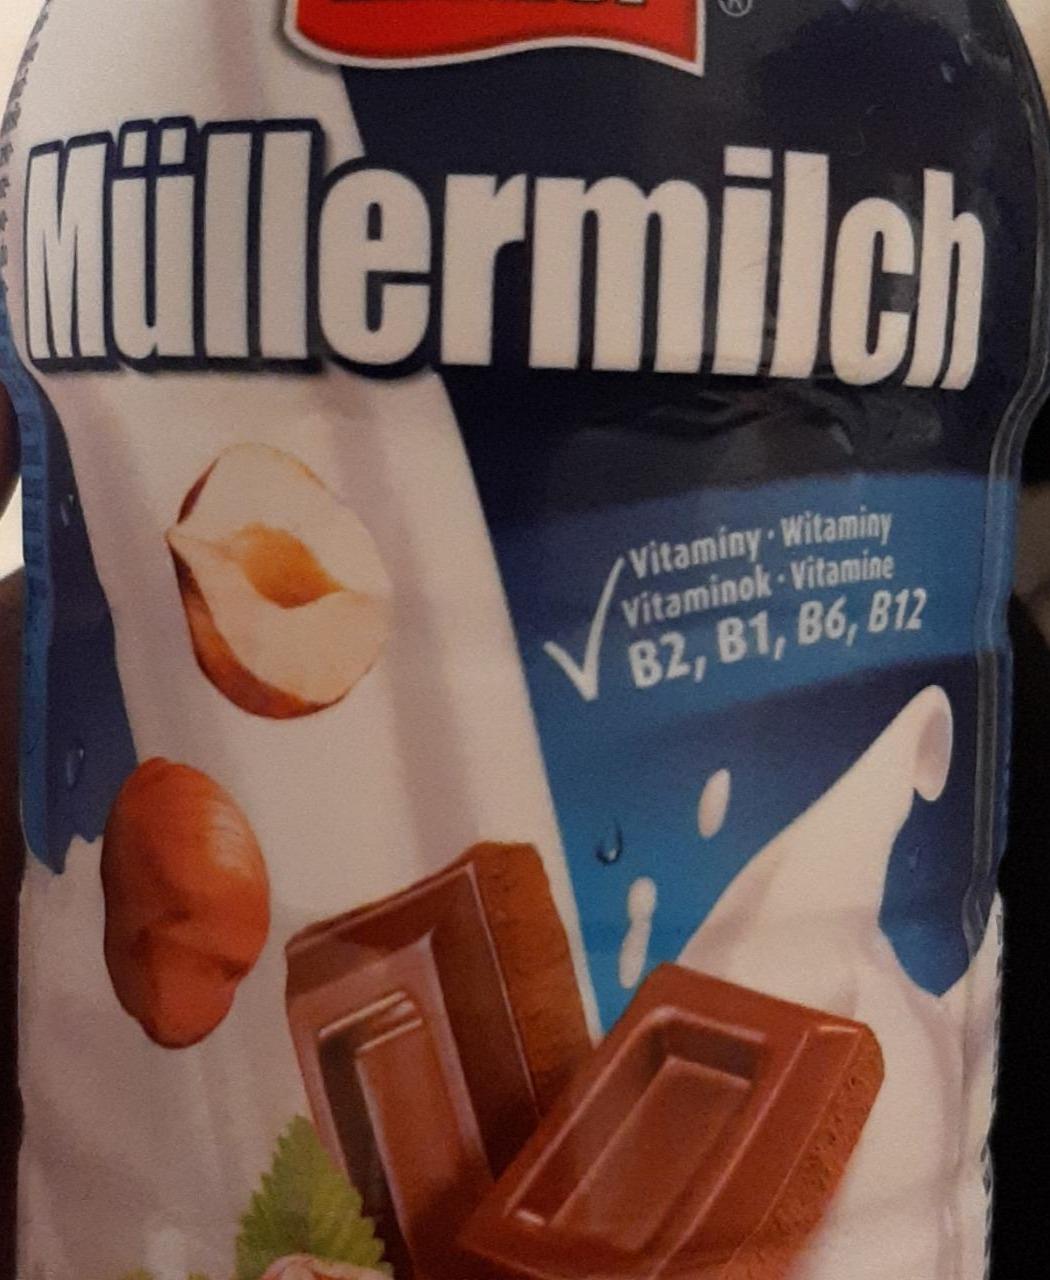 Фото - Молочный напиток Mullermilch с шоколадно-ореховым вкусом Müller